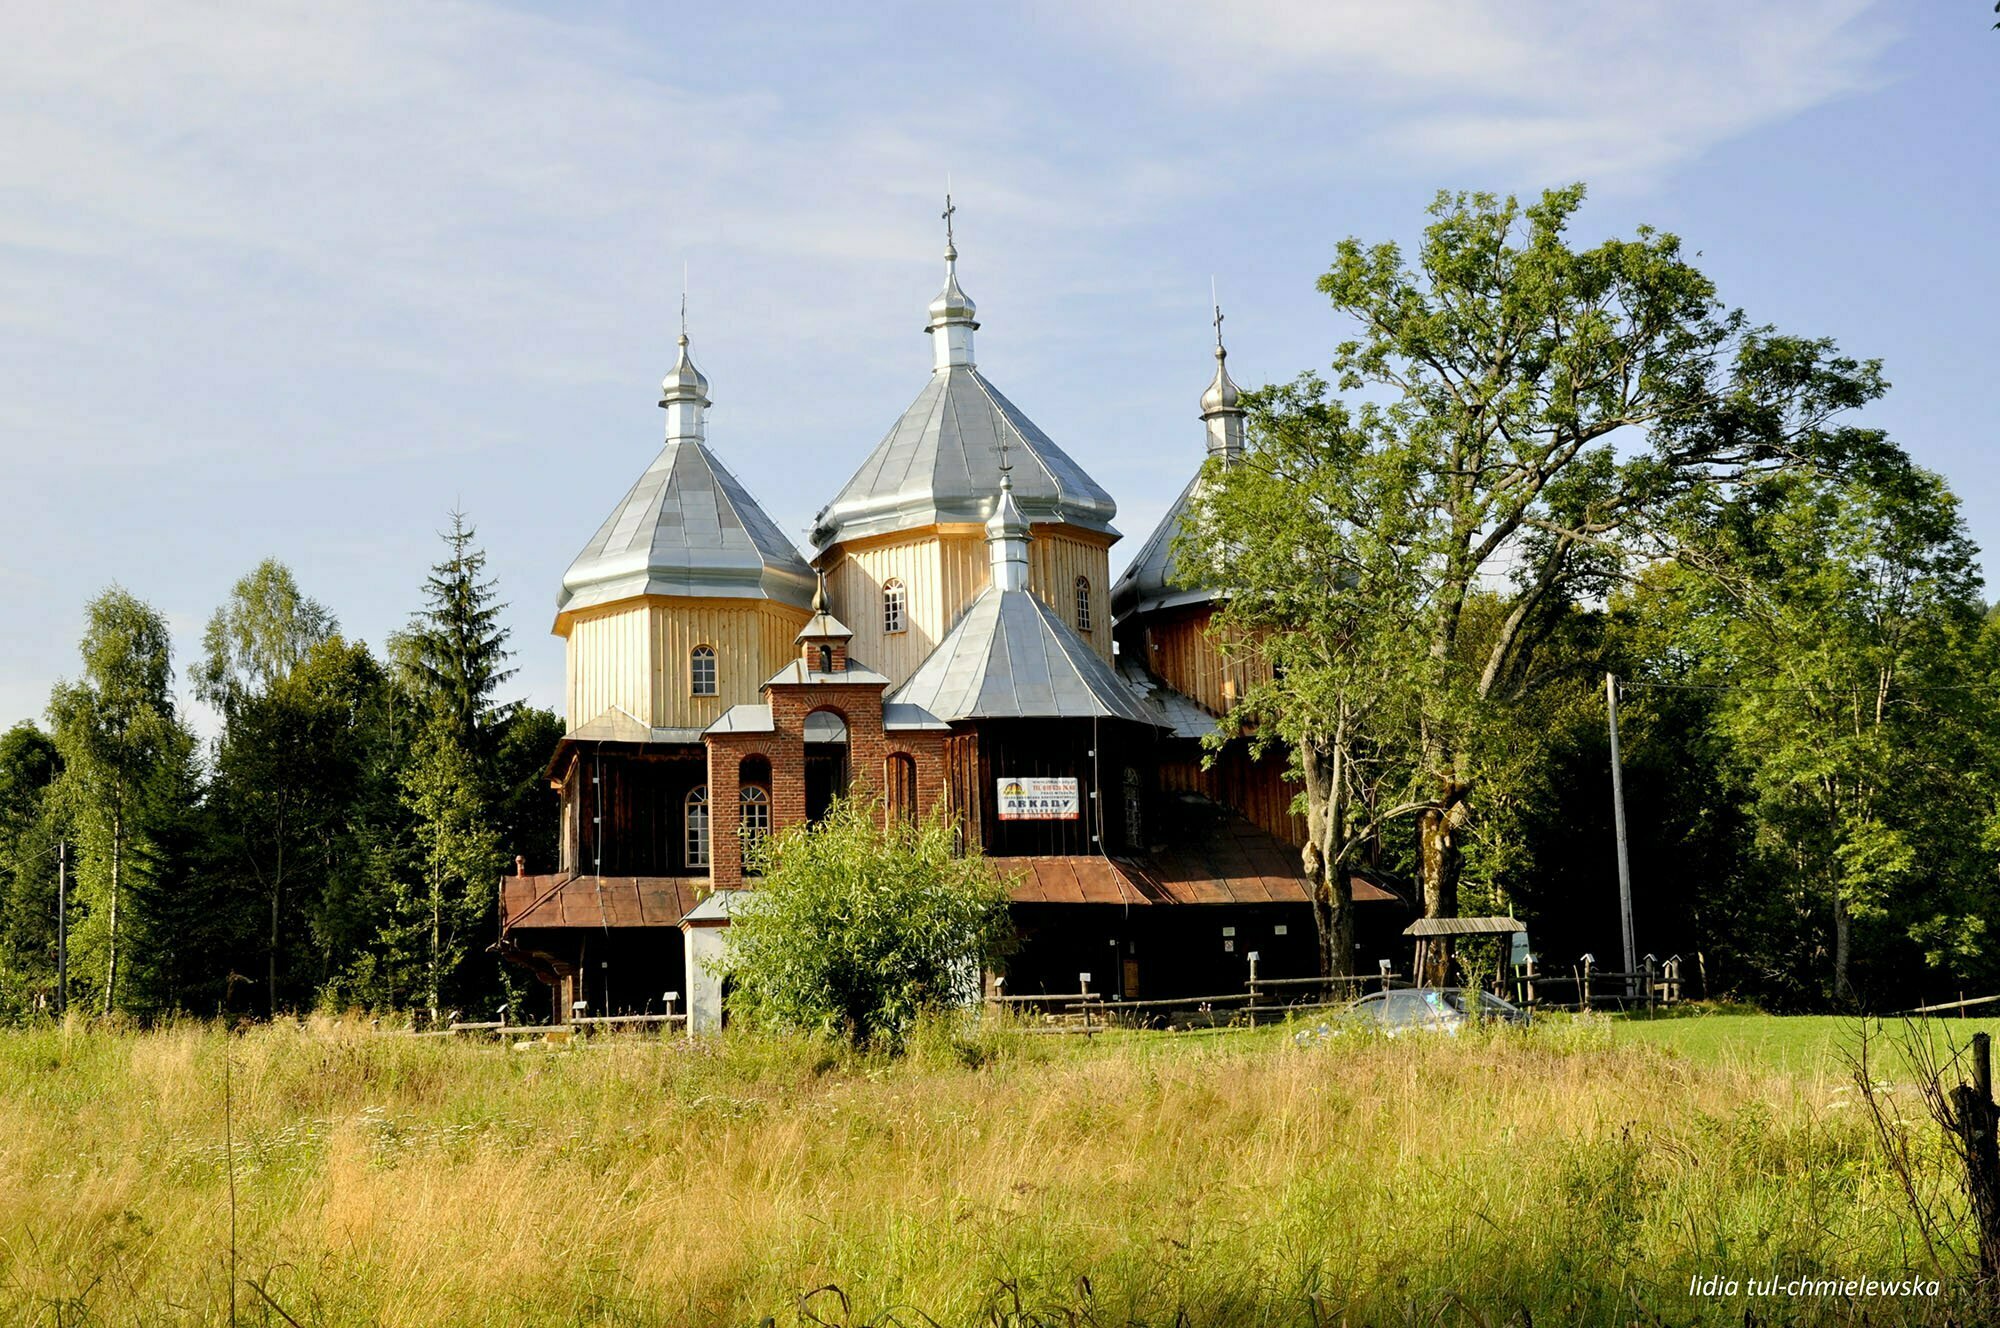 Cerkiew w miejscowości Bystre / fot. Lidia Tul-Chmielewska